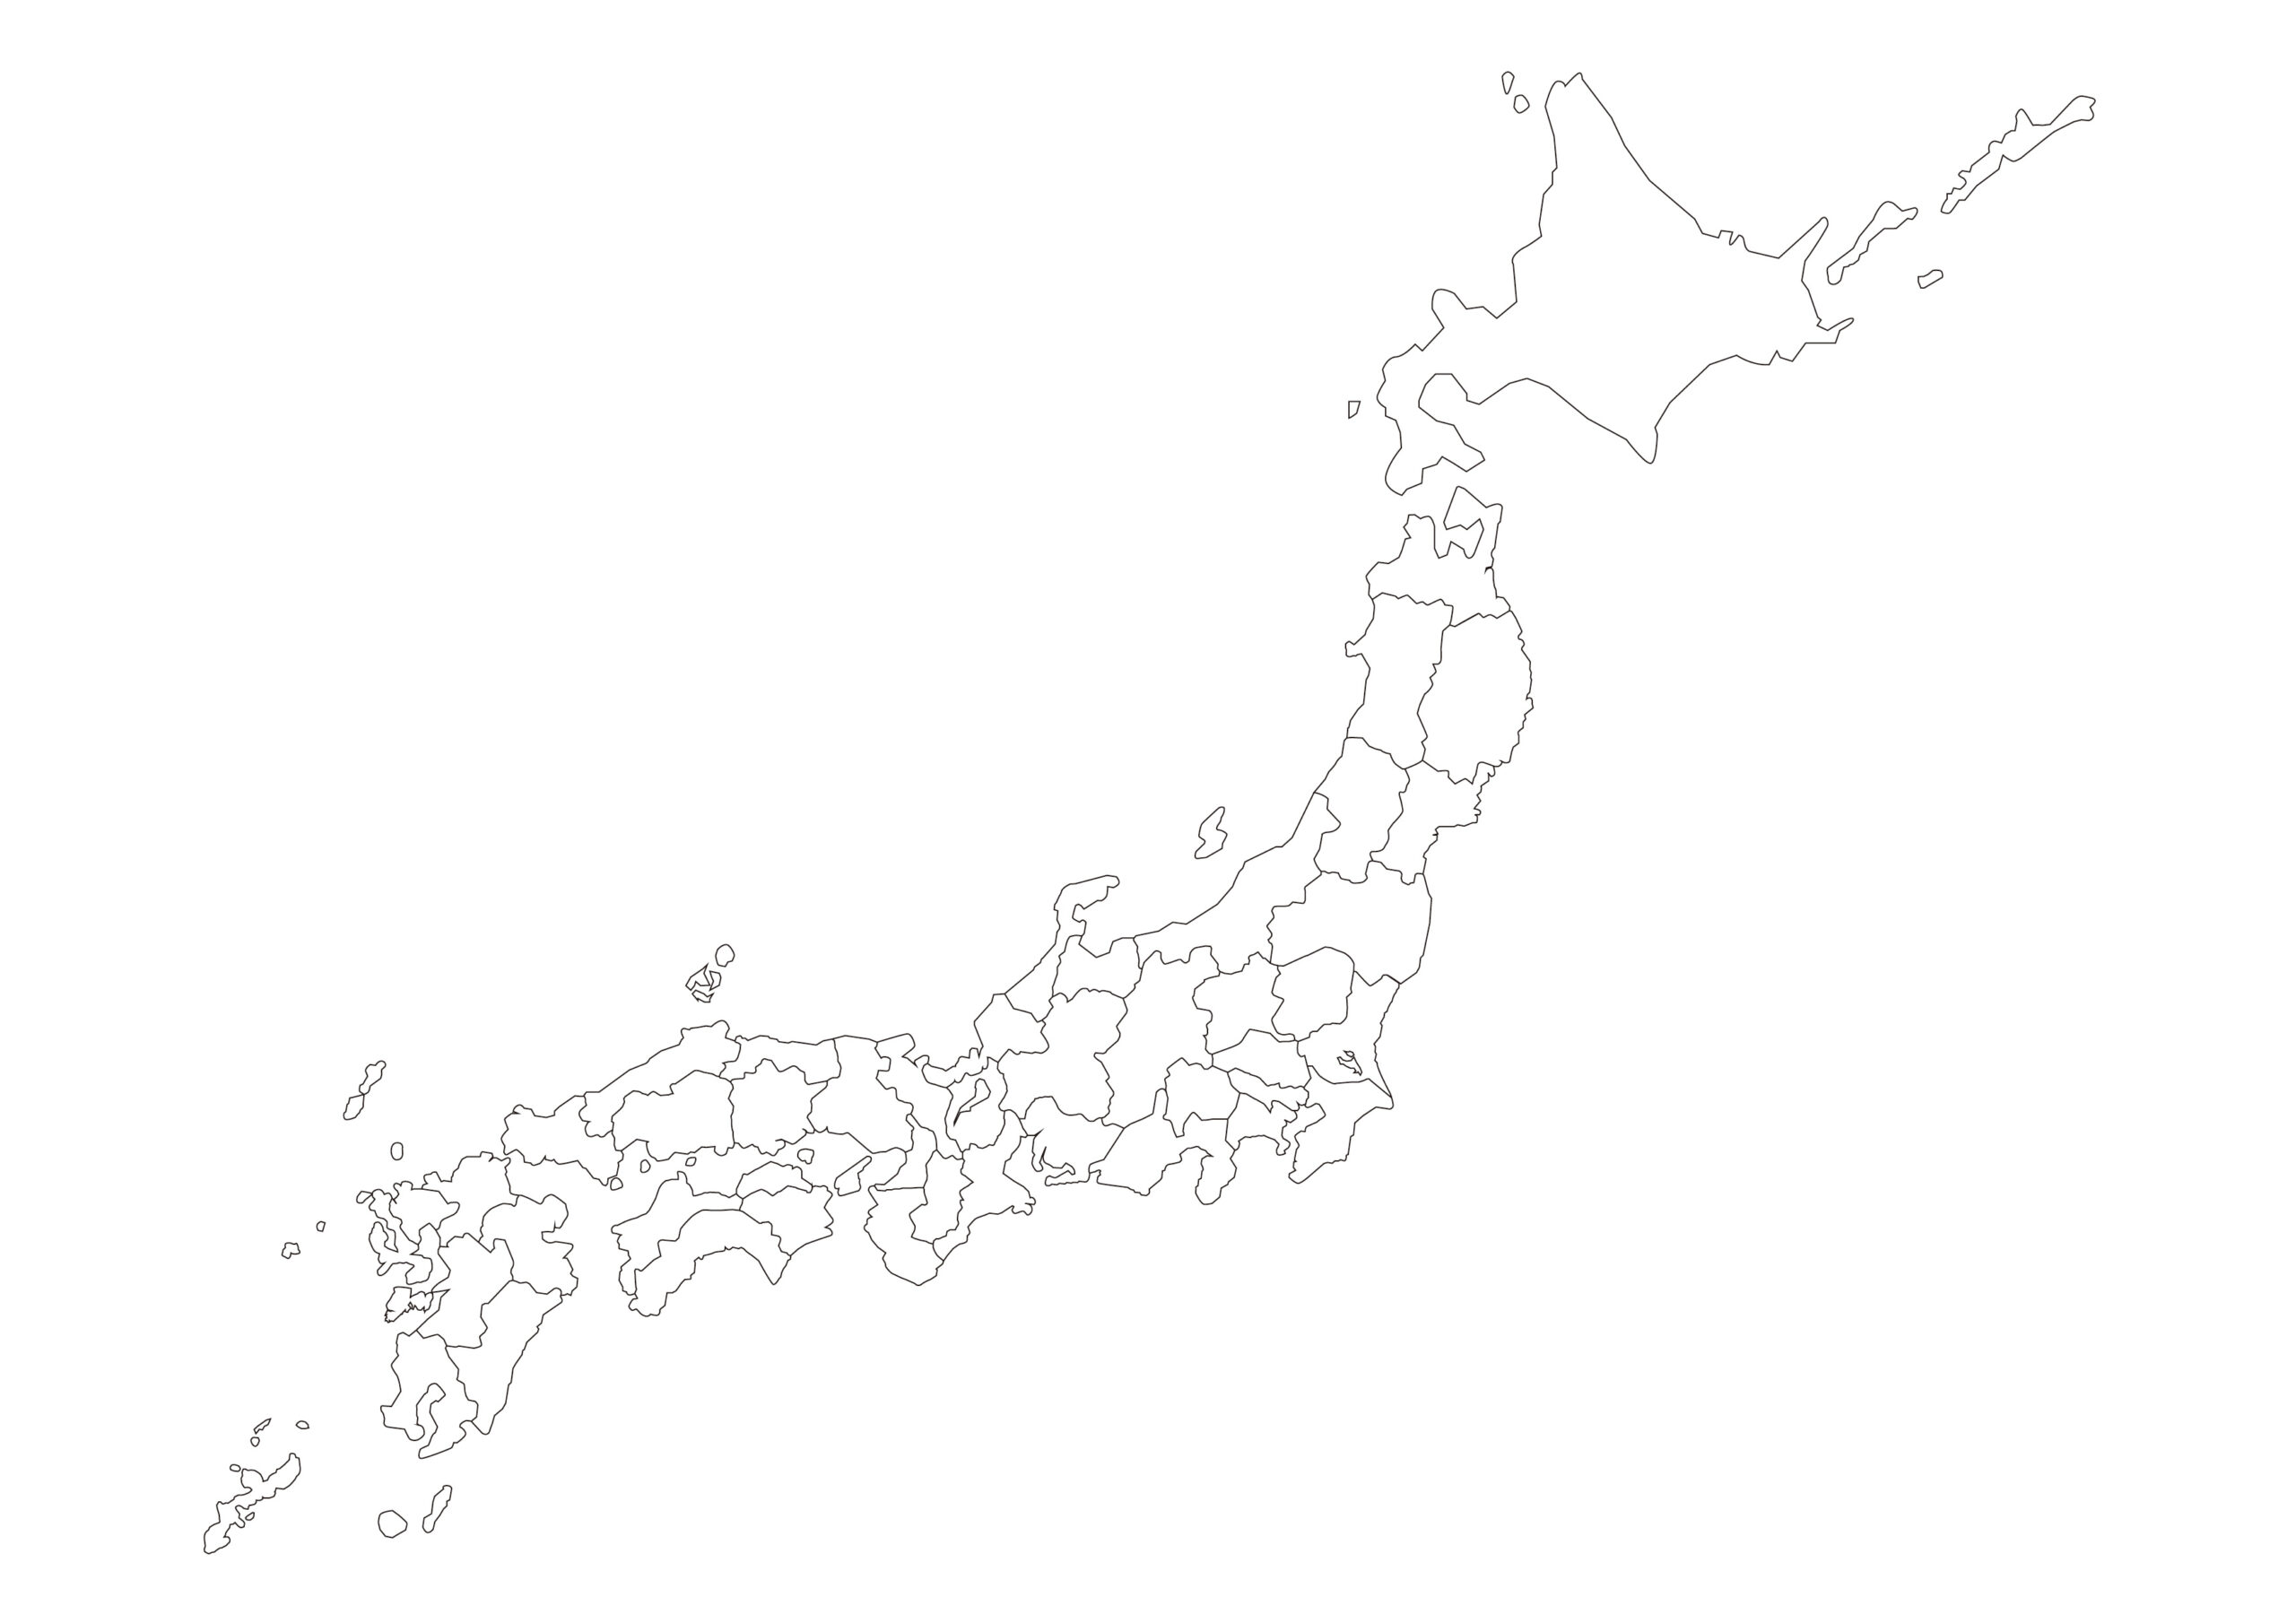 日本地図 白地図 都道府県 境界線あり 横 四つ葉のクローバー